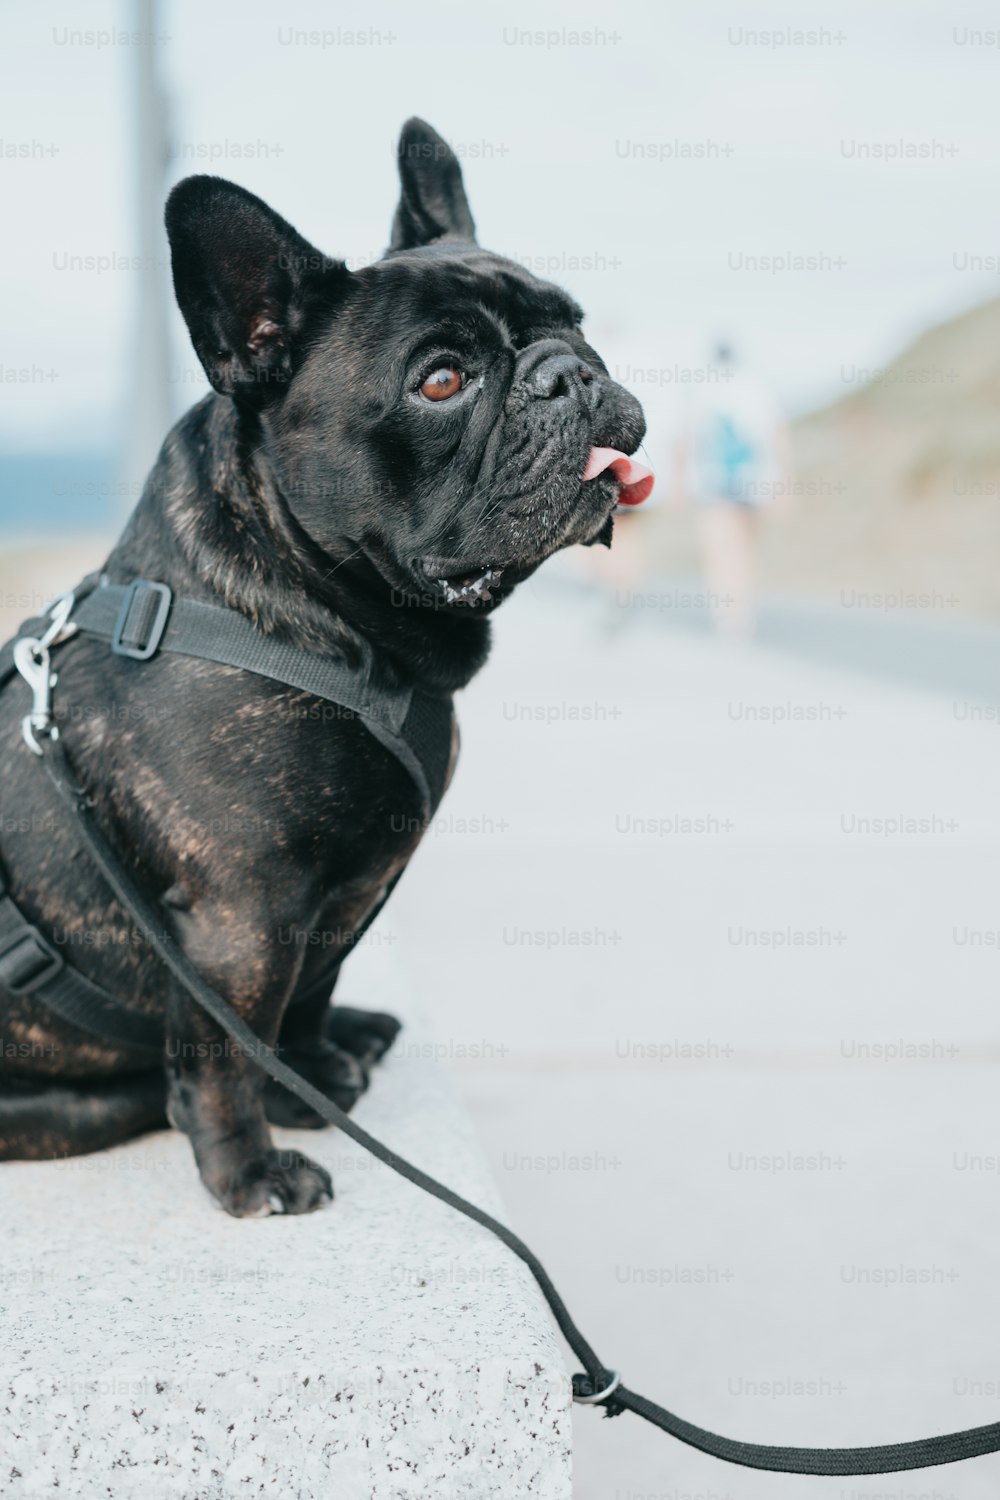 목줄이 달린 검��은 개가 시멘트 블록 위에 앉아 있다